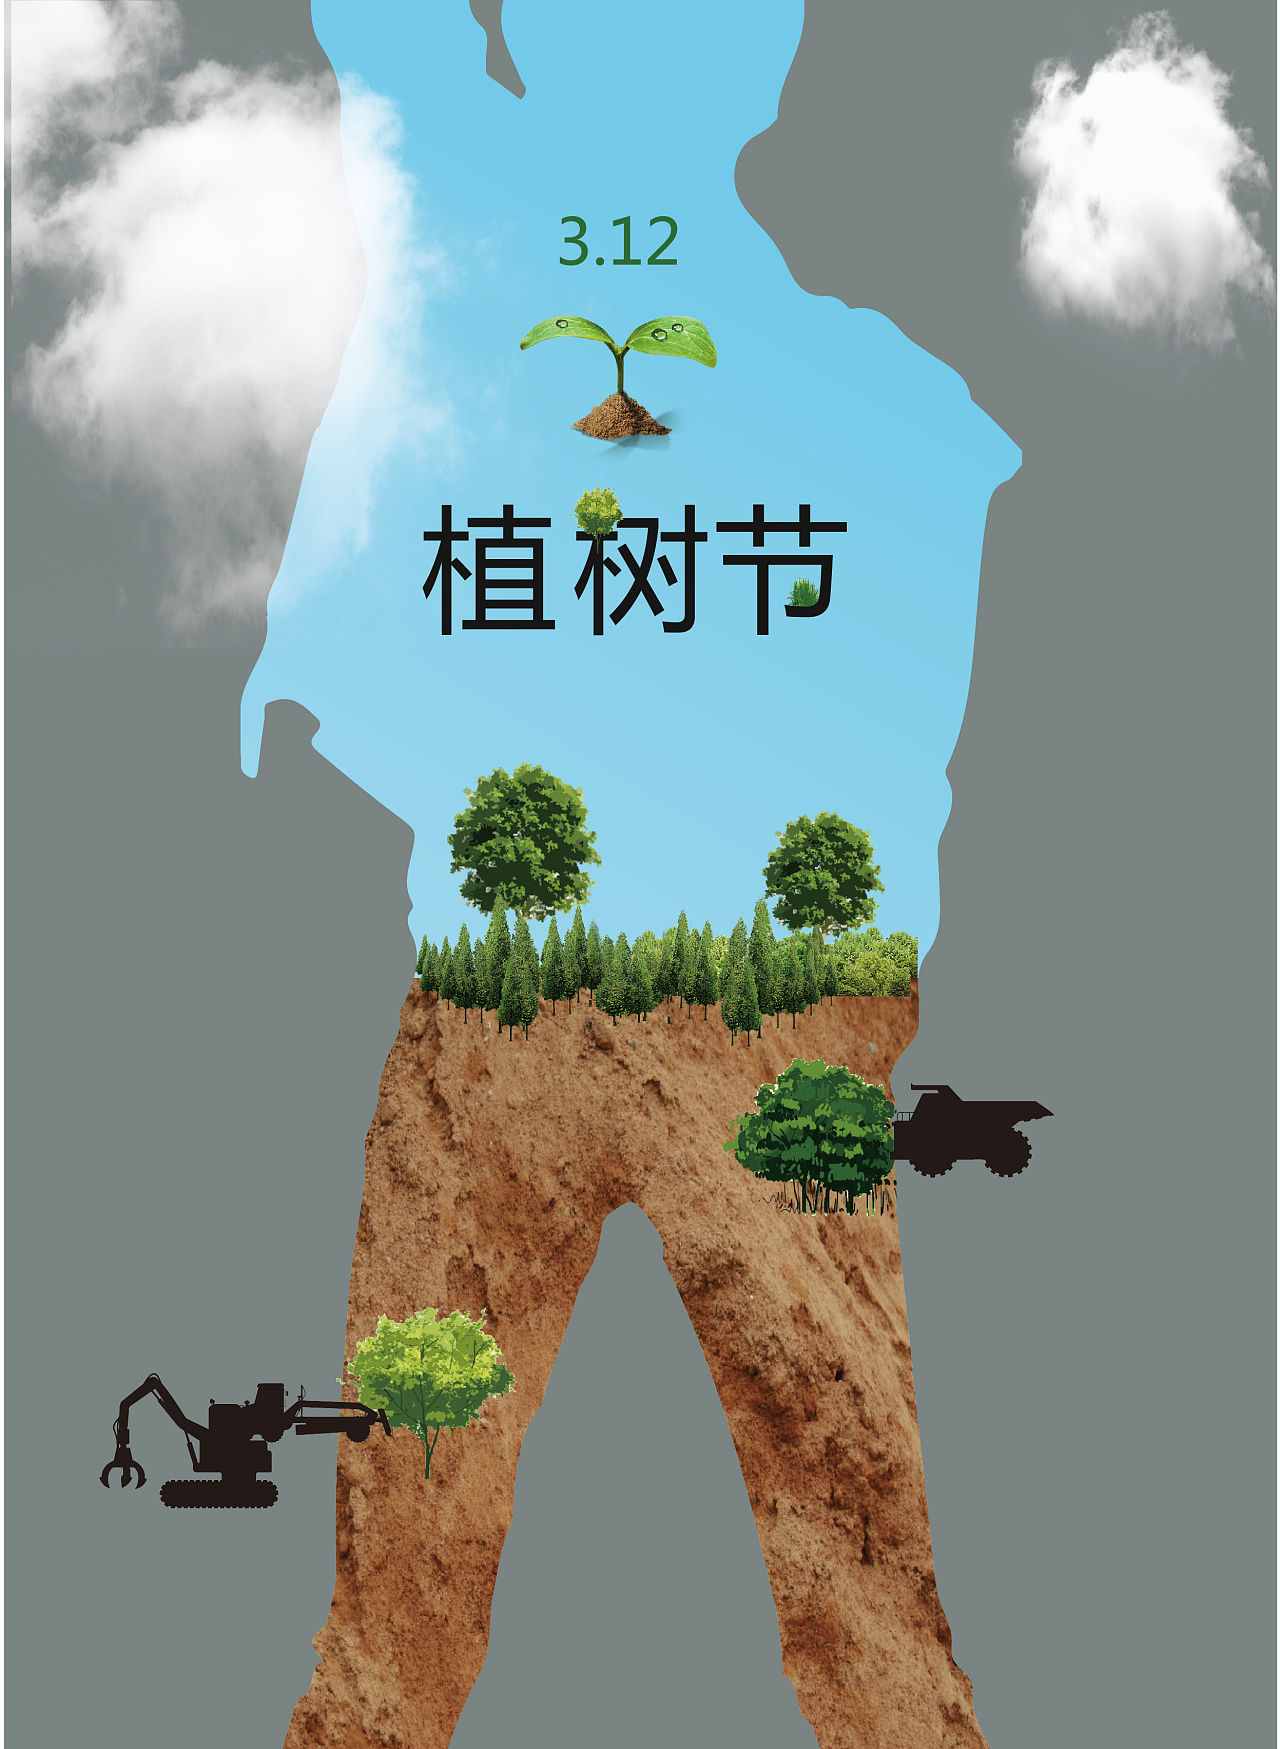 绿蓝色男孩植树手绘植树节宣传中文微信公众号小图 - 模板 - Canva可画